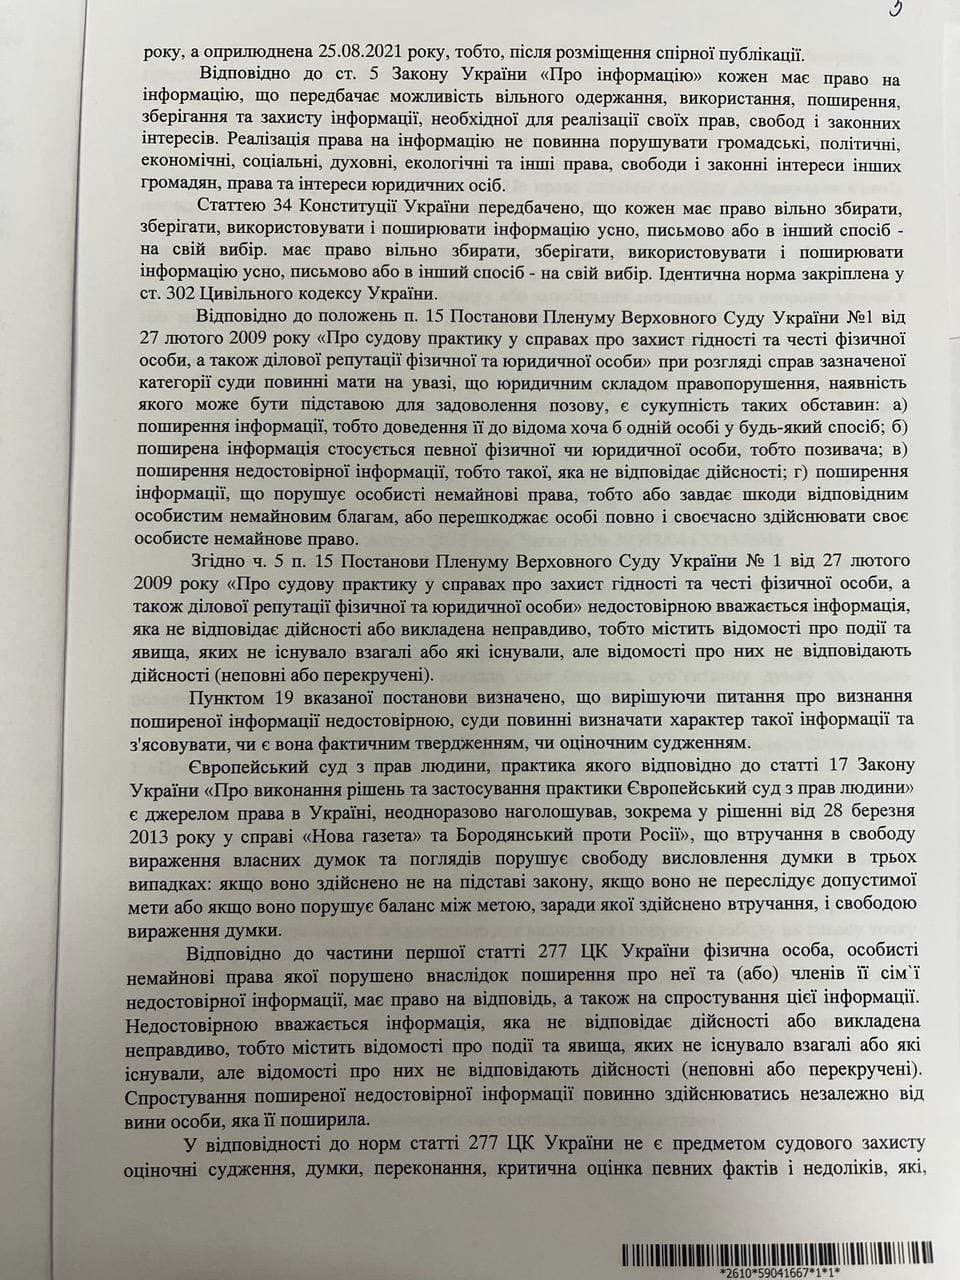 Решение суда относительно иска Льошенко